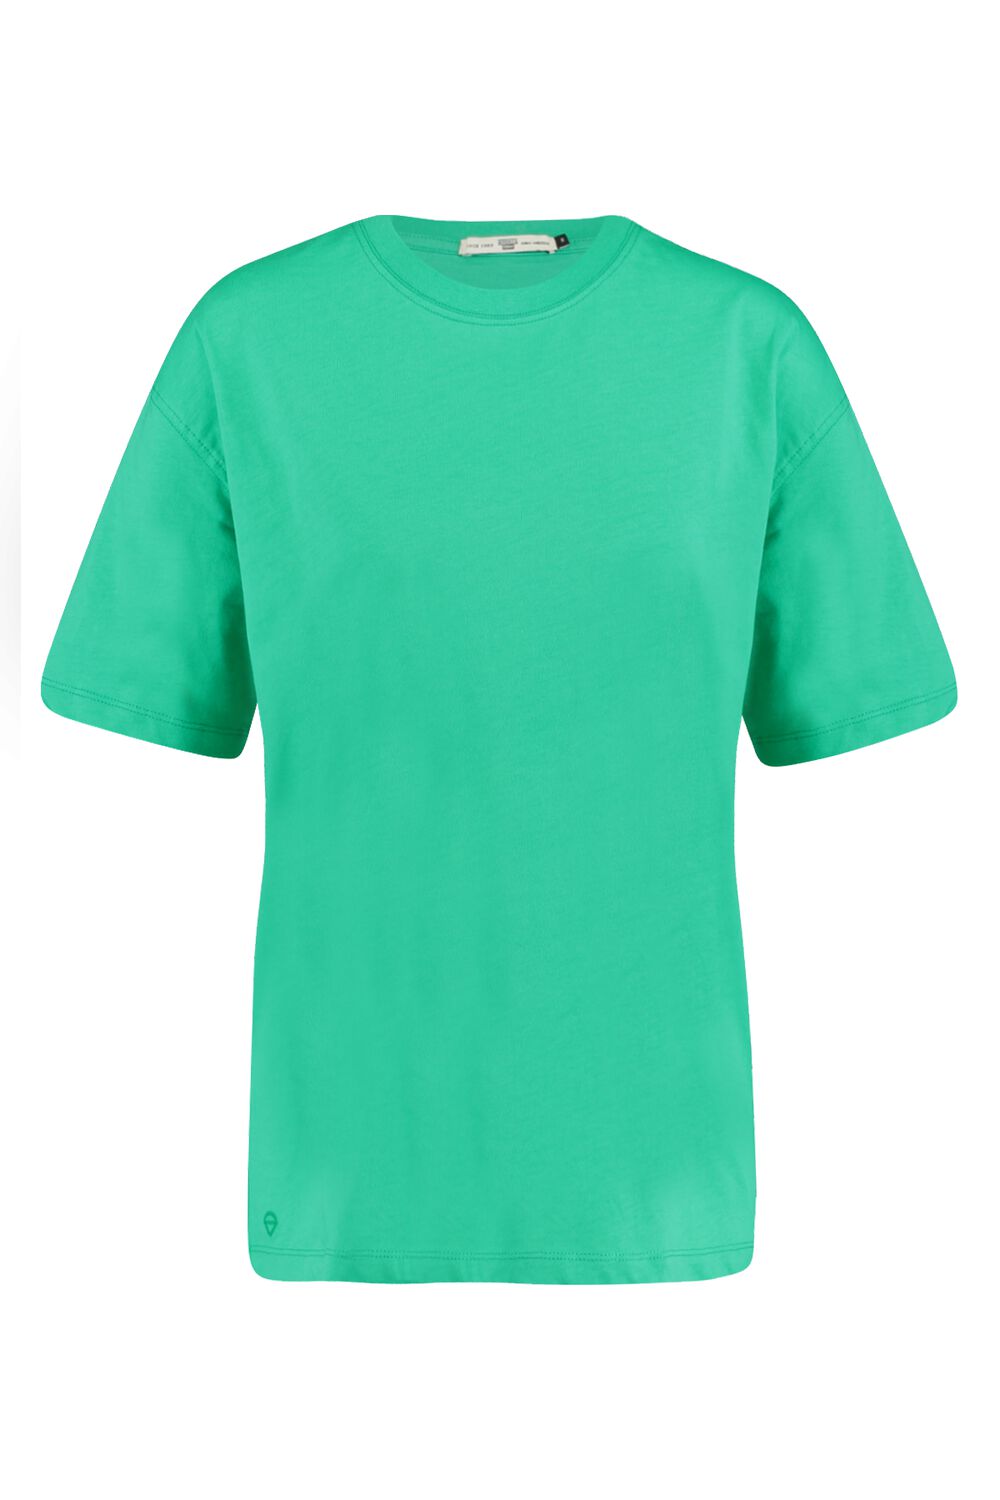 Basic T shirt Oversized Fit Groen